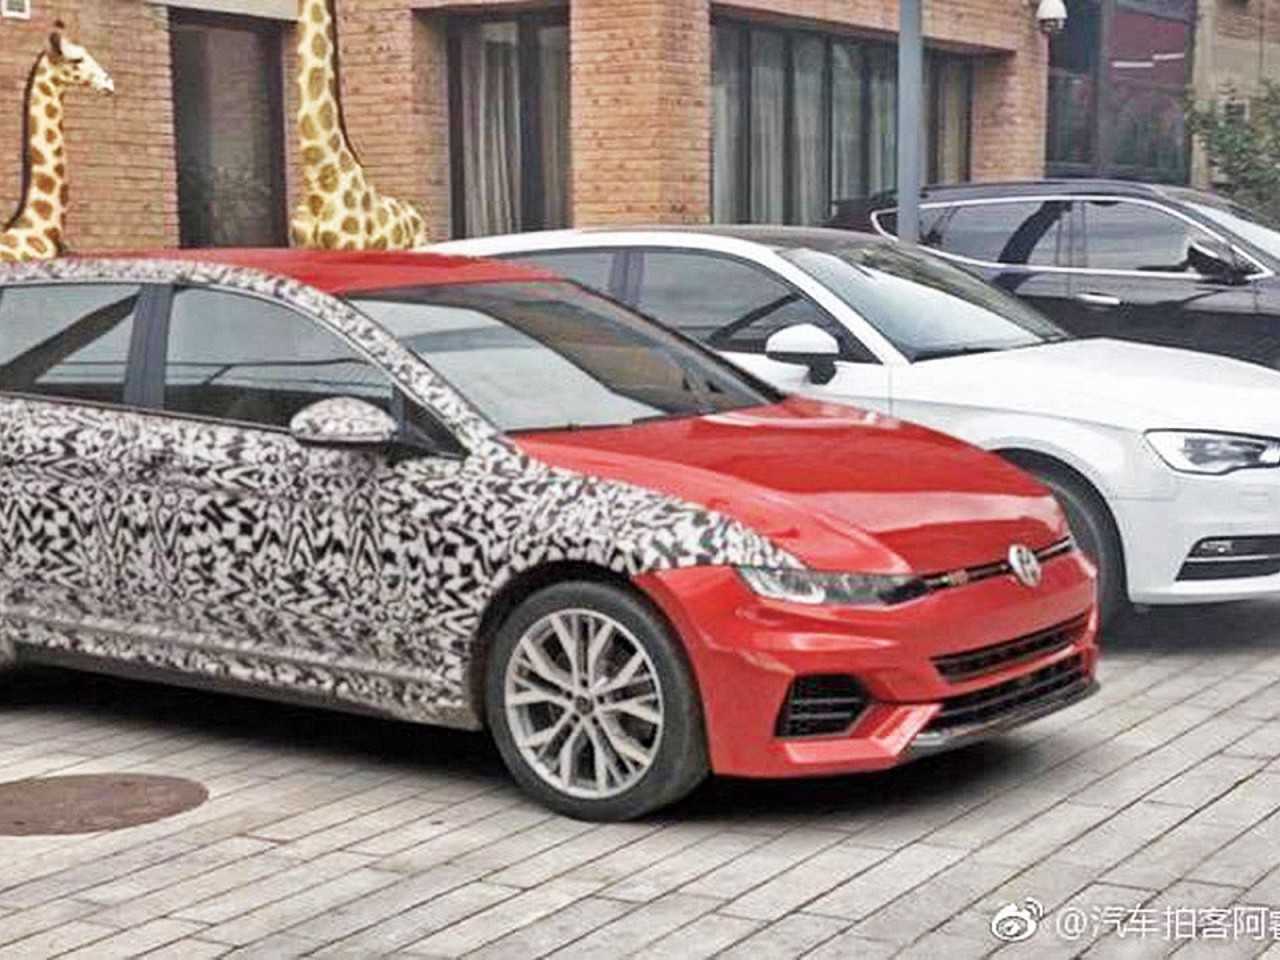 Imagem que circula na internet mostra o suposto Volkswagen Golf VIII: verdade ou no, ela parece coerente com futuro modelo